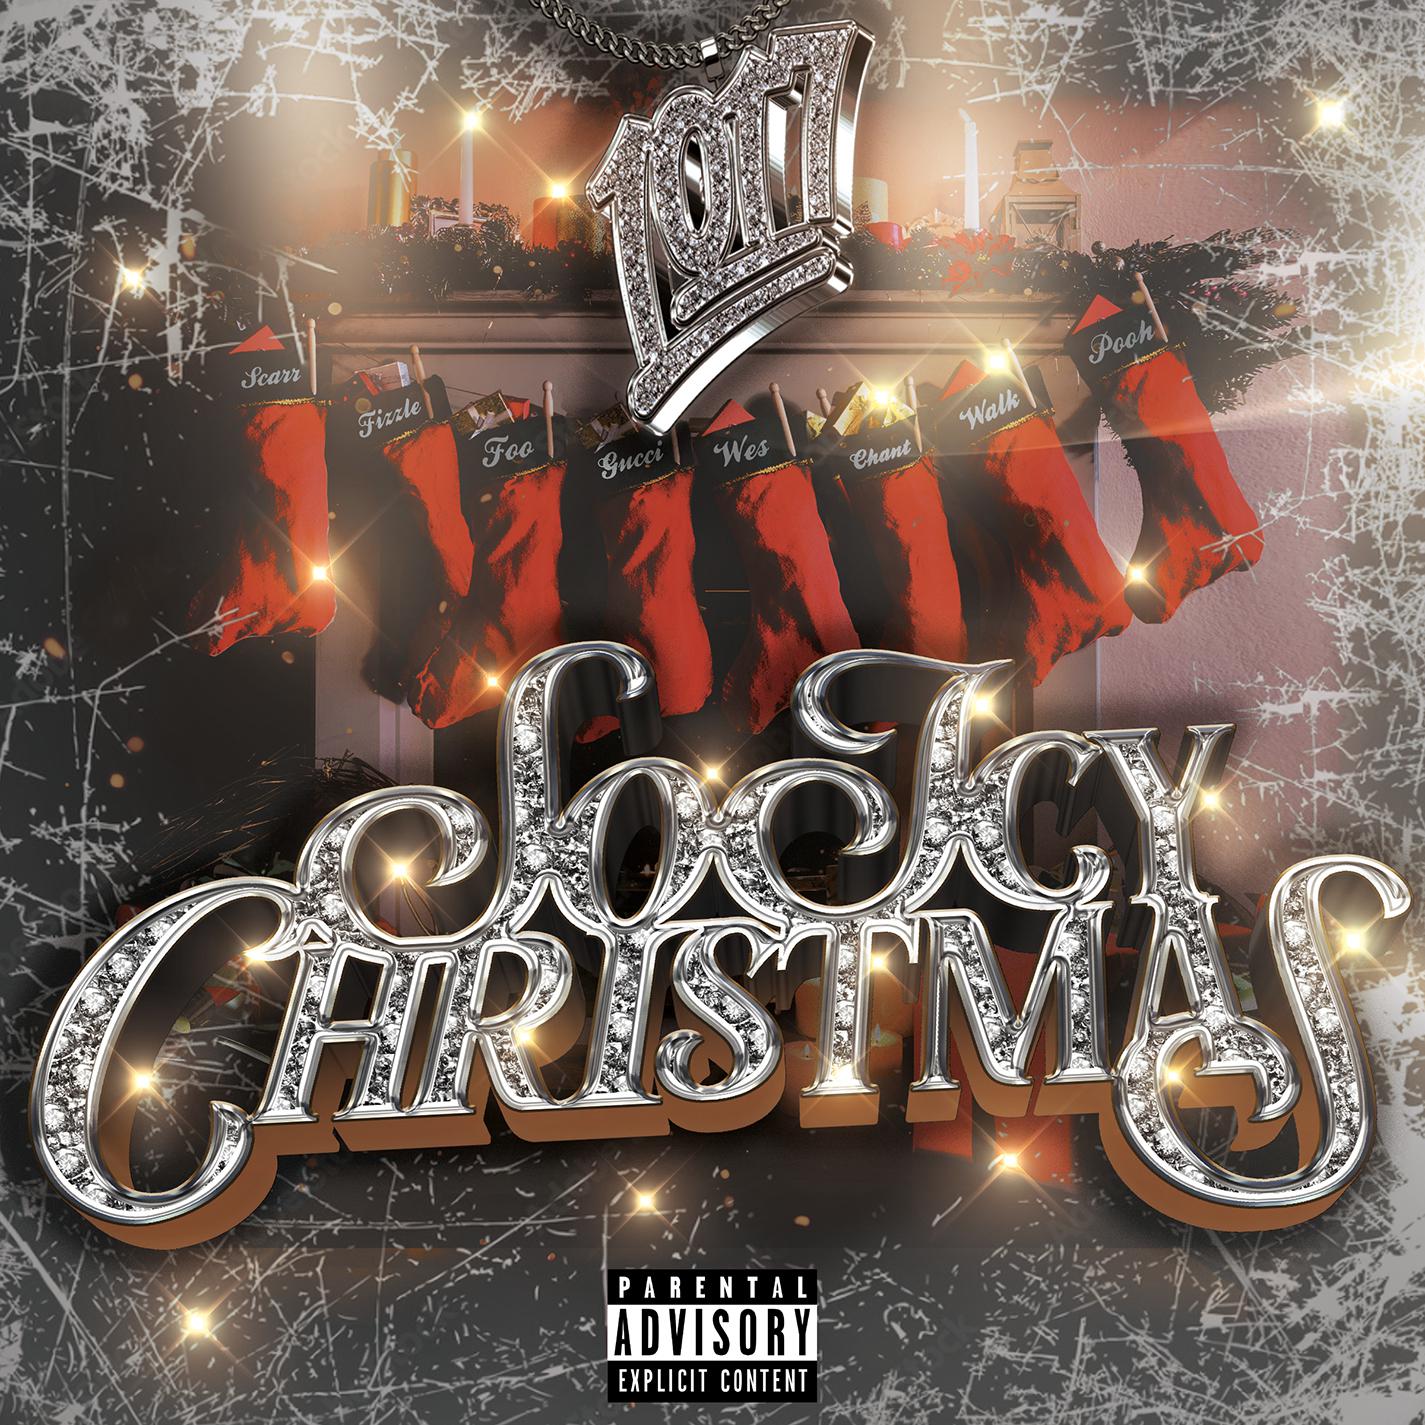 Street Ni66a Christmas歌词 歌手Gucci Mane-专辑So Icy Christmas-单曲《Street Ni66a Christmas》LRC歌词下载